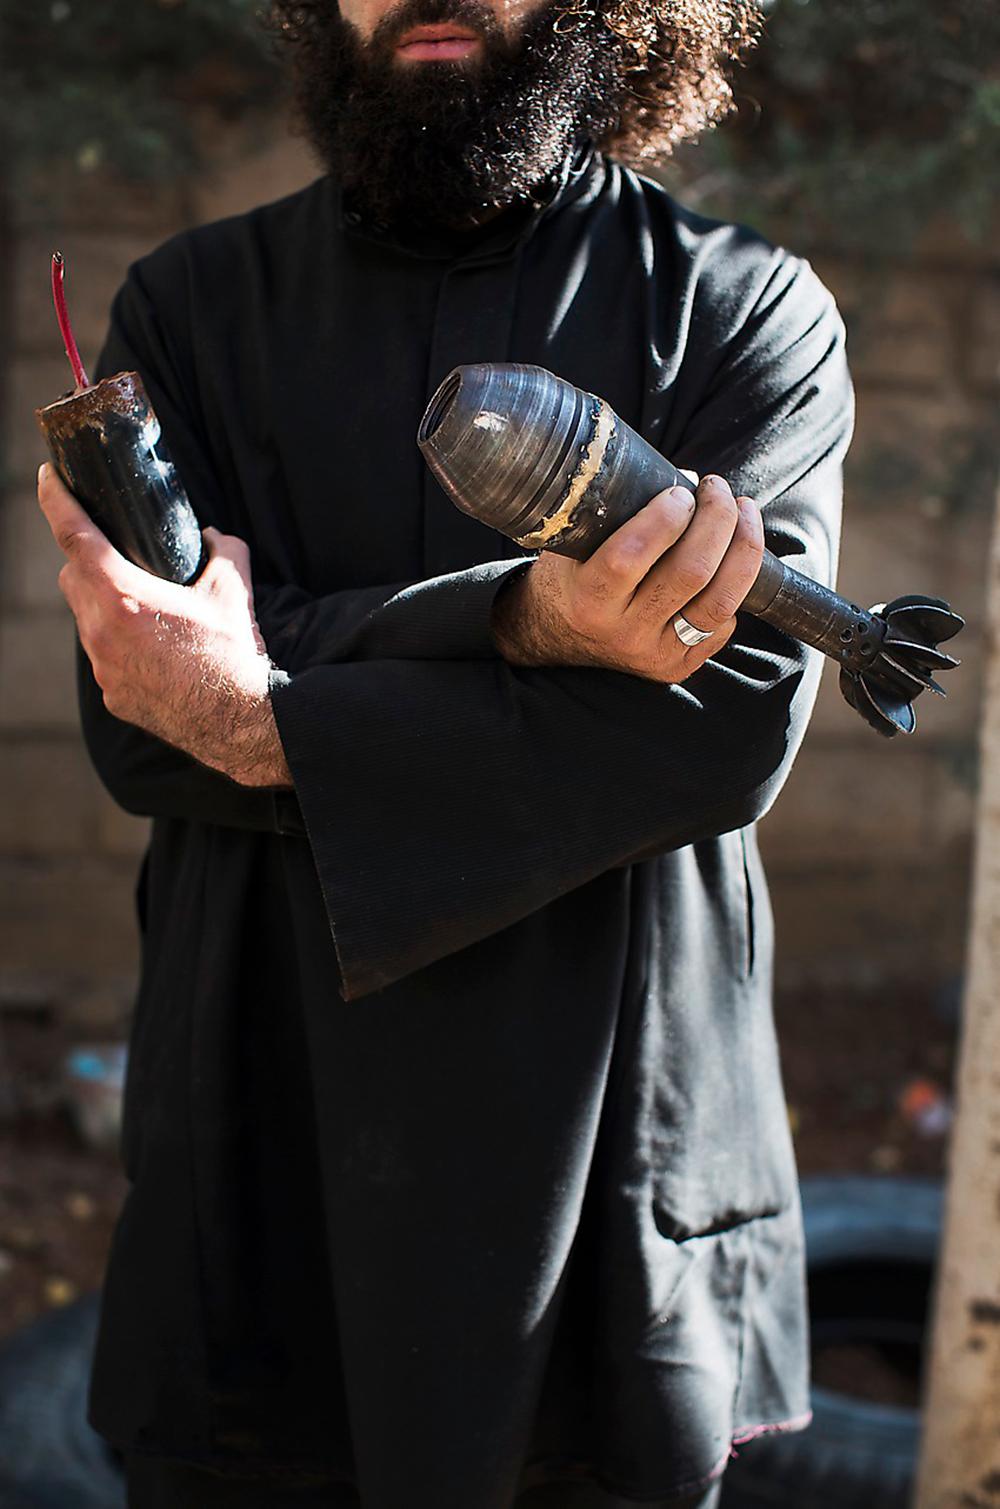 Förr var han bagare, nu bygger han bomber. Abu Dujana, 27, säger att han inte är rädd, även om flera av hans kollegor blivit skadade och till och med dött när de tillverkar vapen. ”Nu har jag gjort det här i nio månader. Det var andra experter från Jabhat Al-Nusra som lärde mig. När kriget är över så vill jag gärna fortsätta med båda mina yrken. Att tillverka vapen är lite samma sak som att baka. Man mixar ihop och lagar till. Det är väldigt kreativt.”